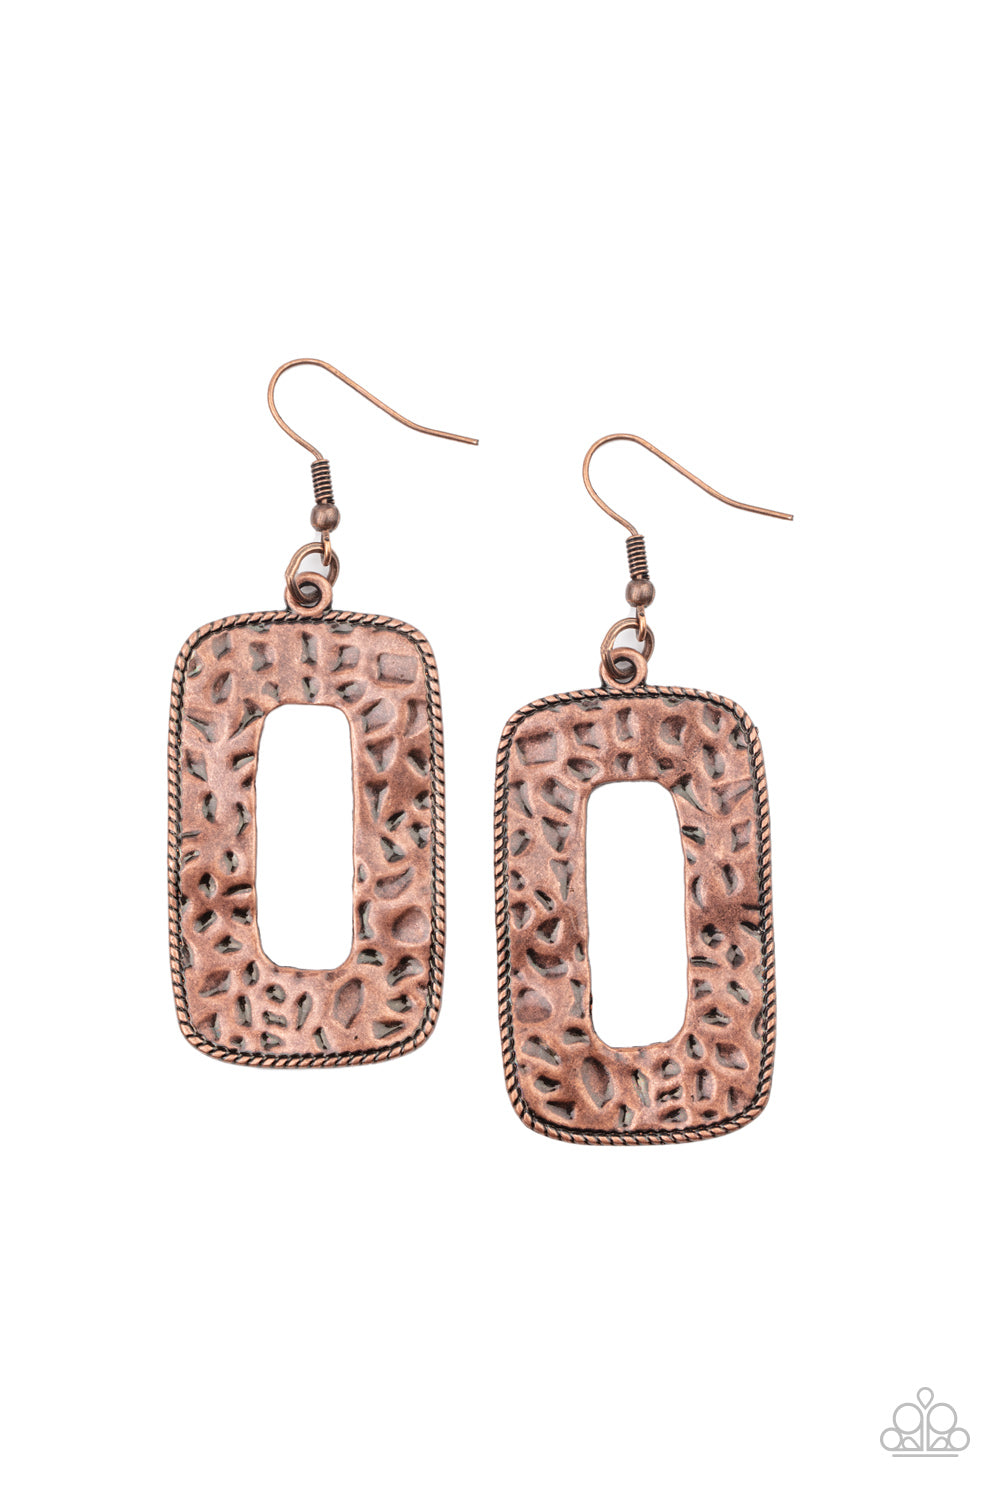 Primal Elements Copper
Earrings - Daria's Blings N Things